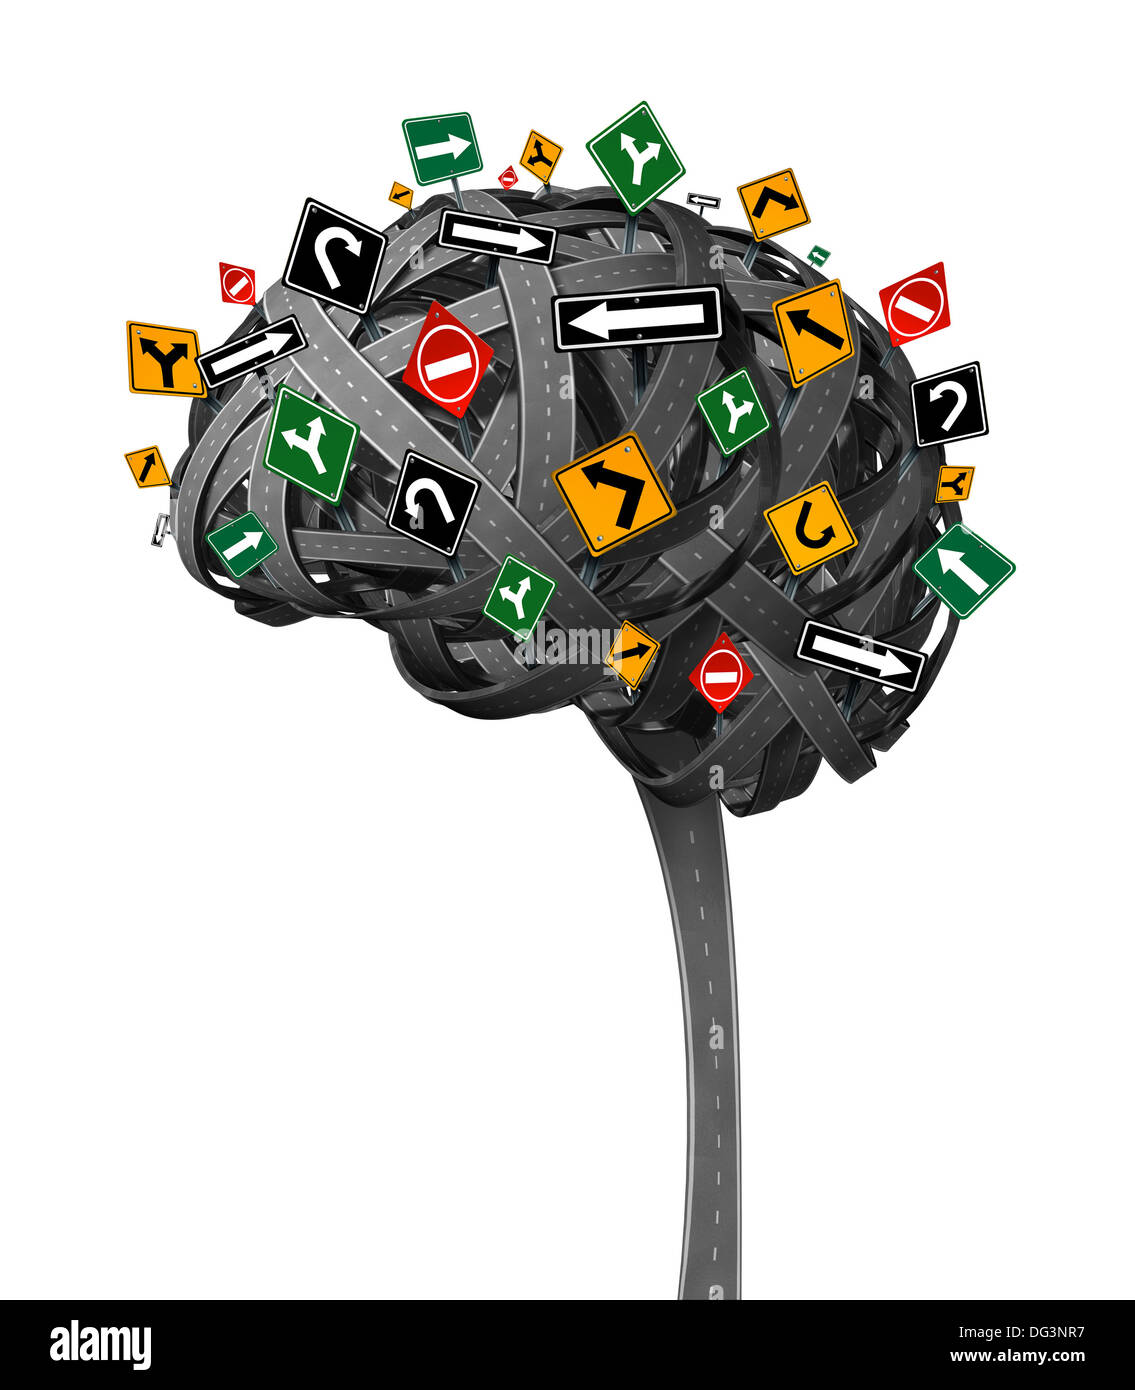 Gehirn Richtung Neurologie Konzept für Demenz mit verschlungenen Straßen in der Form des menschlichen Denkens Organs mit verwirrenden Straße Verkehrszeichen als Symbol für Gesundheit und Metapher für Gedächtnisverlust und Verwirrung auf einem weißen Backhground. Stockfoto